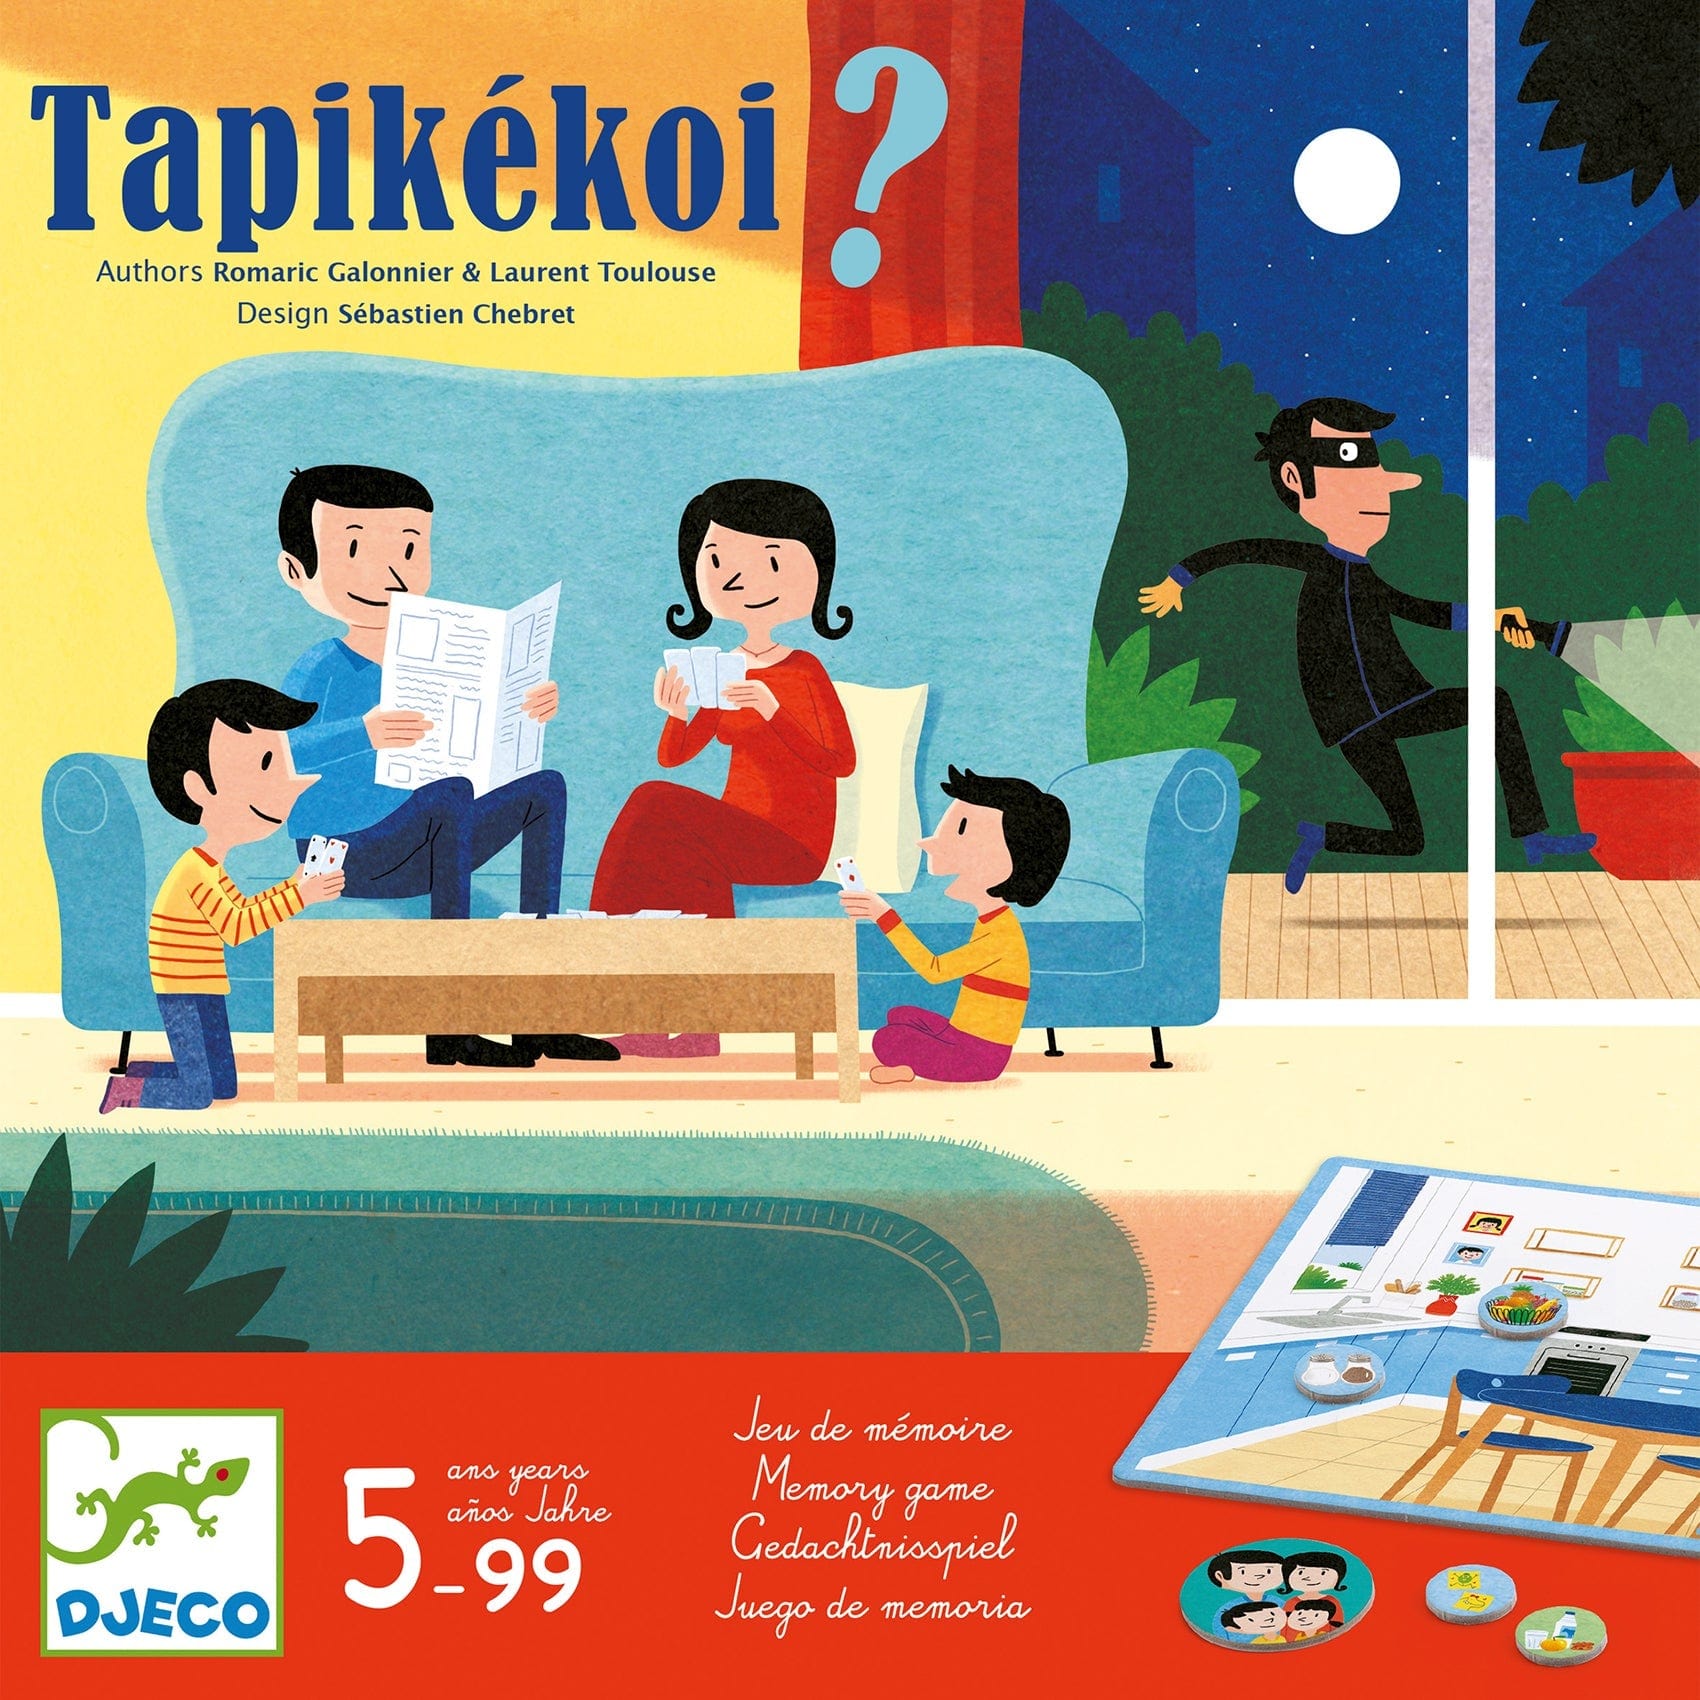 Djeco Juegos de mesa Juego de mesa Tapikékoi DJ08542